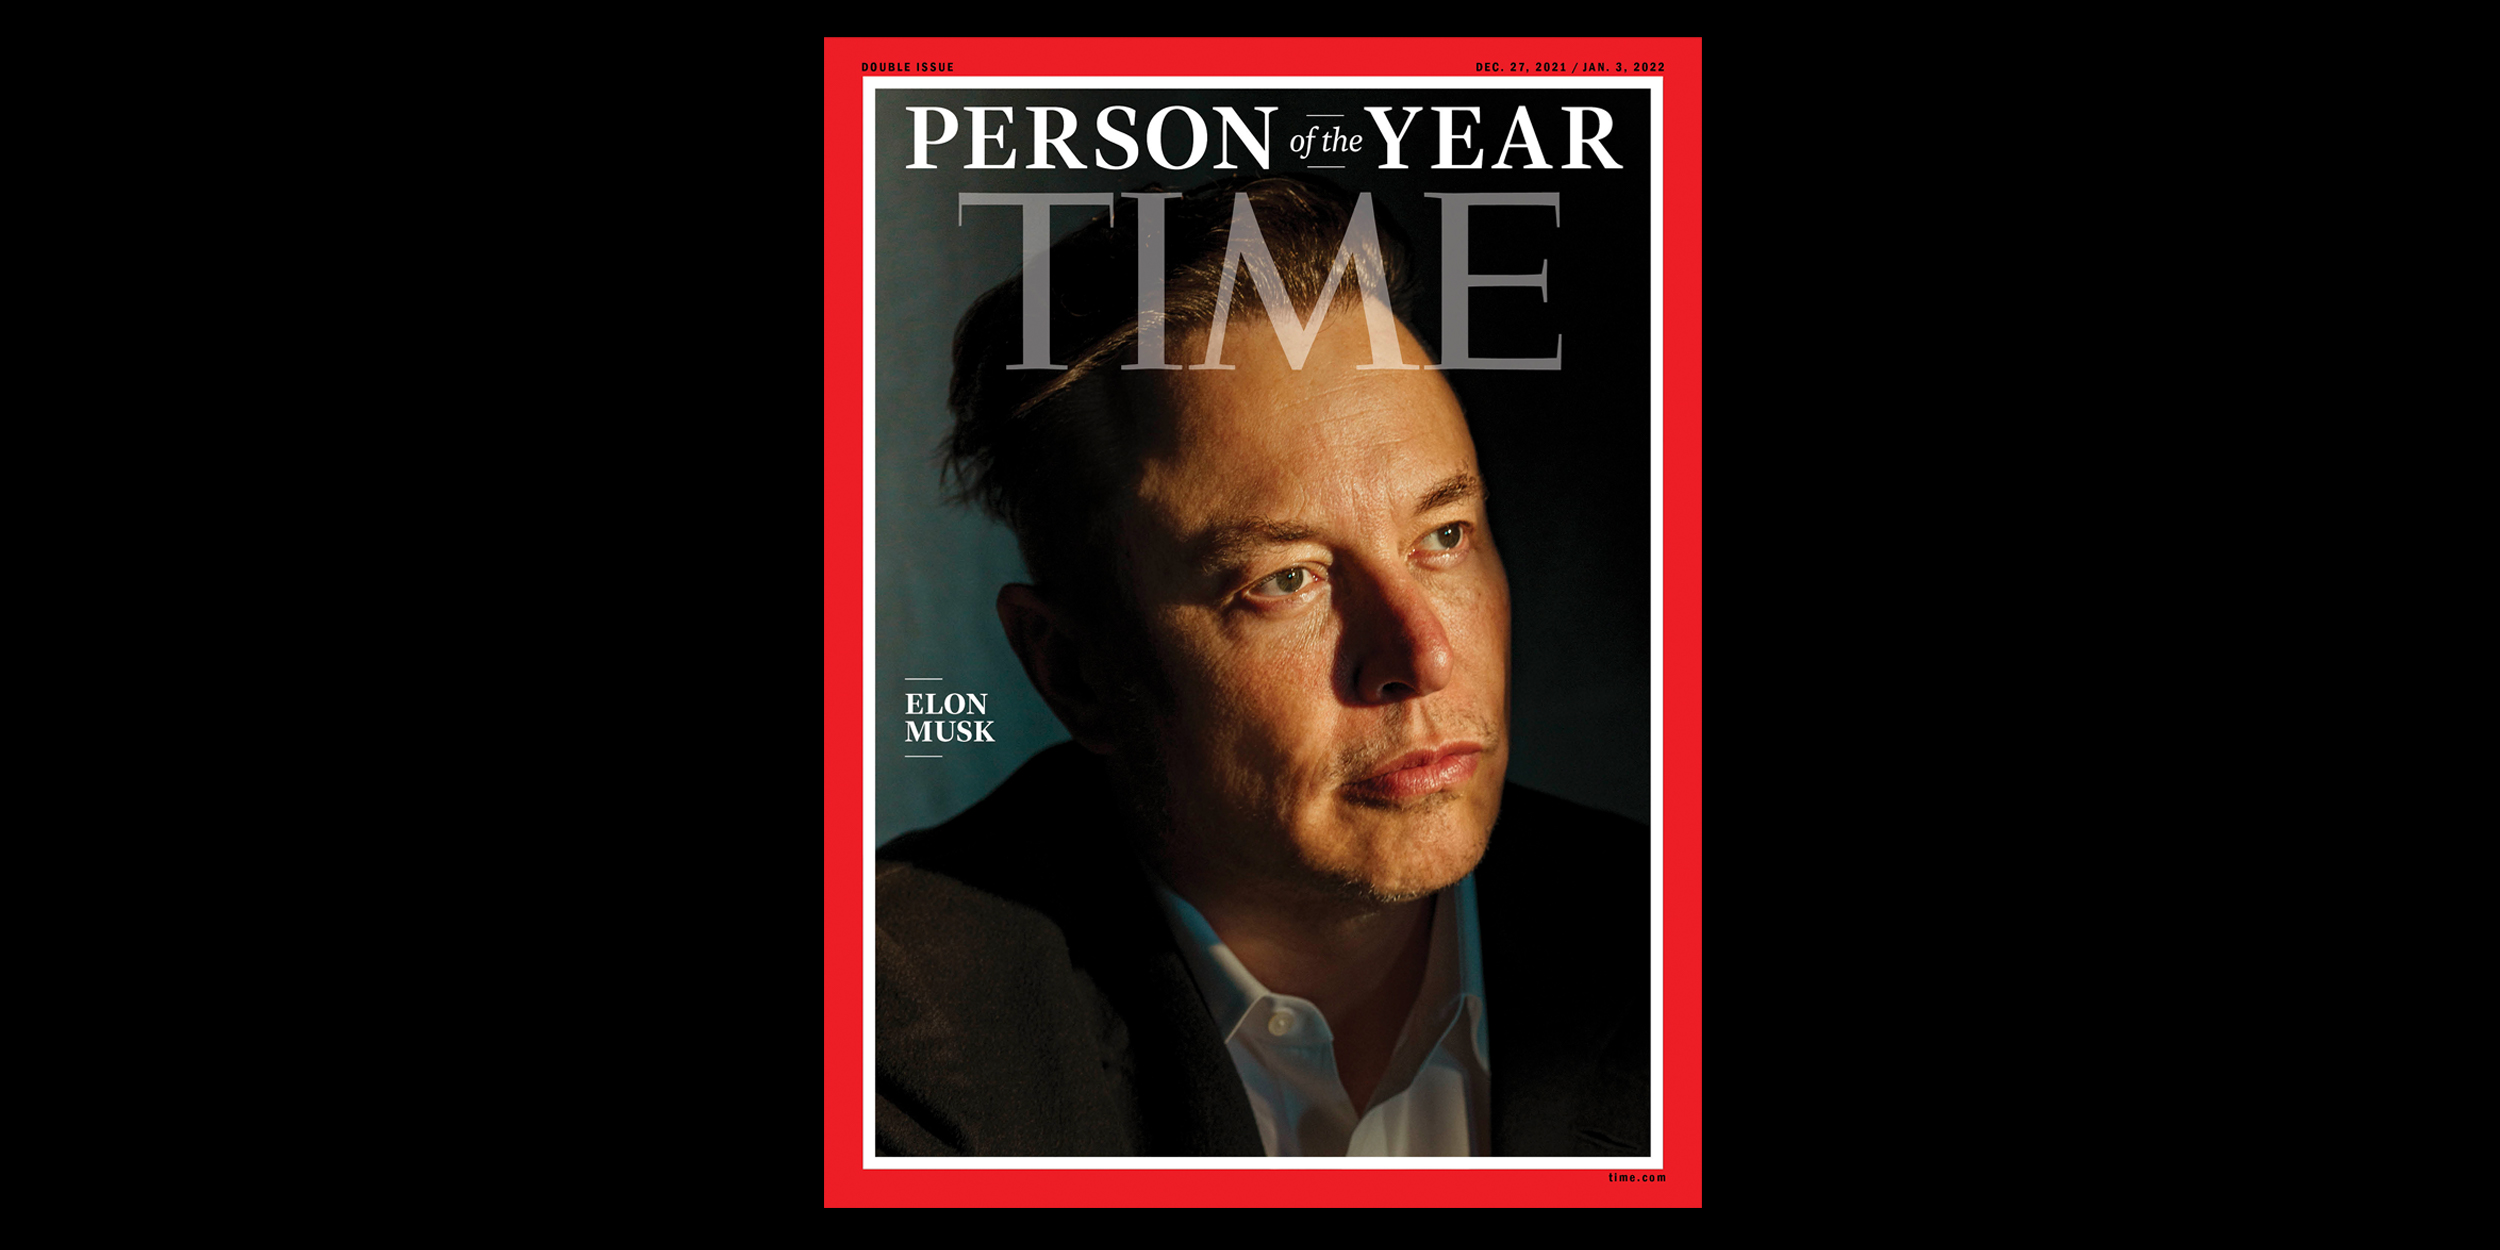 Revista Time nombra a Elon Musk “persona del año” Digital Trends Español